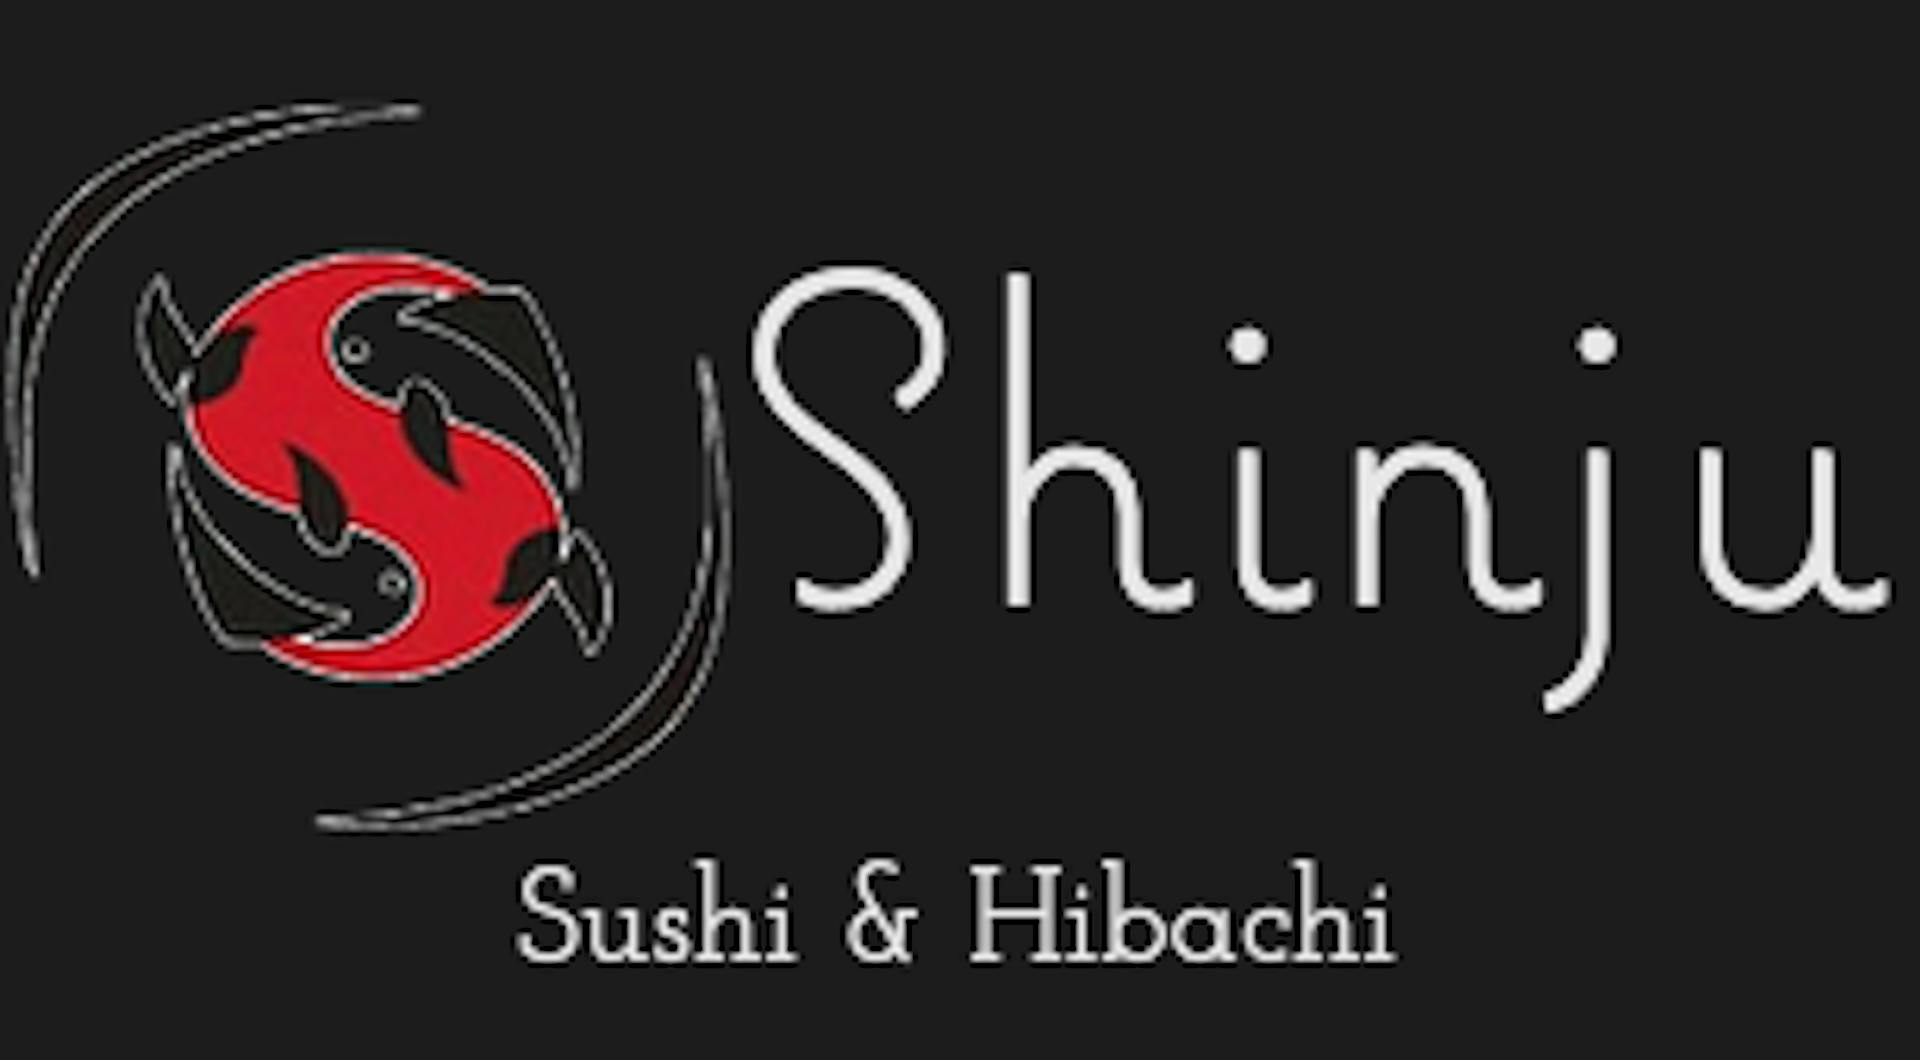 Shinju Sushi & Hibachi